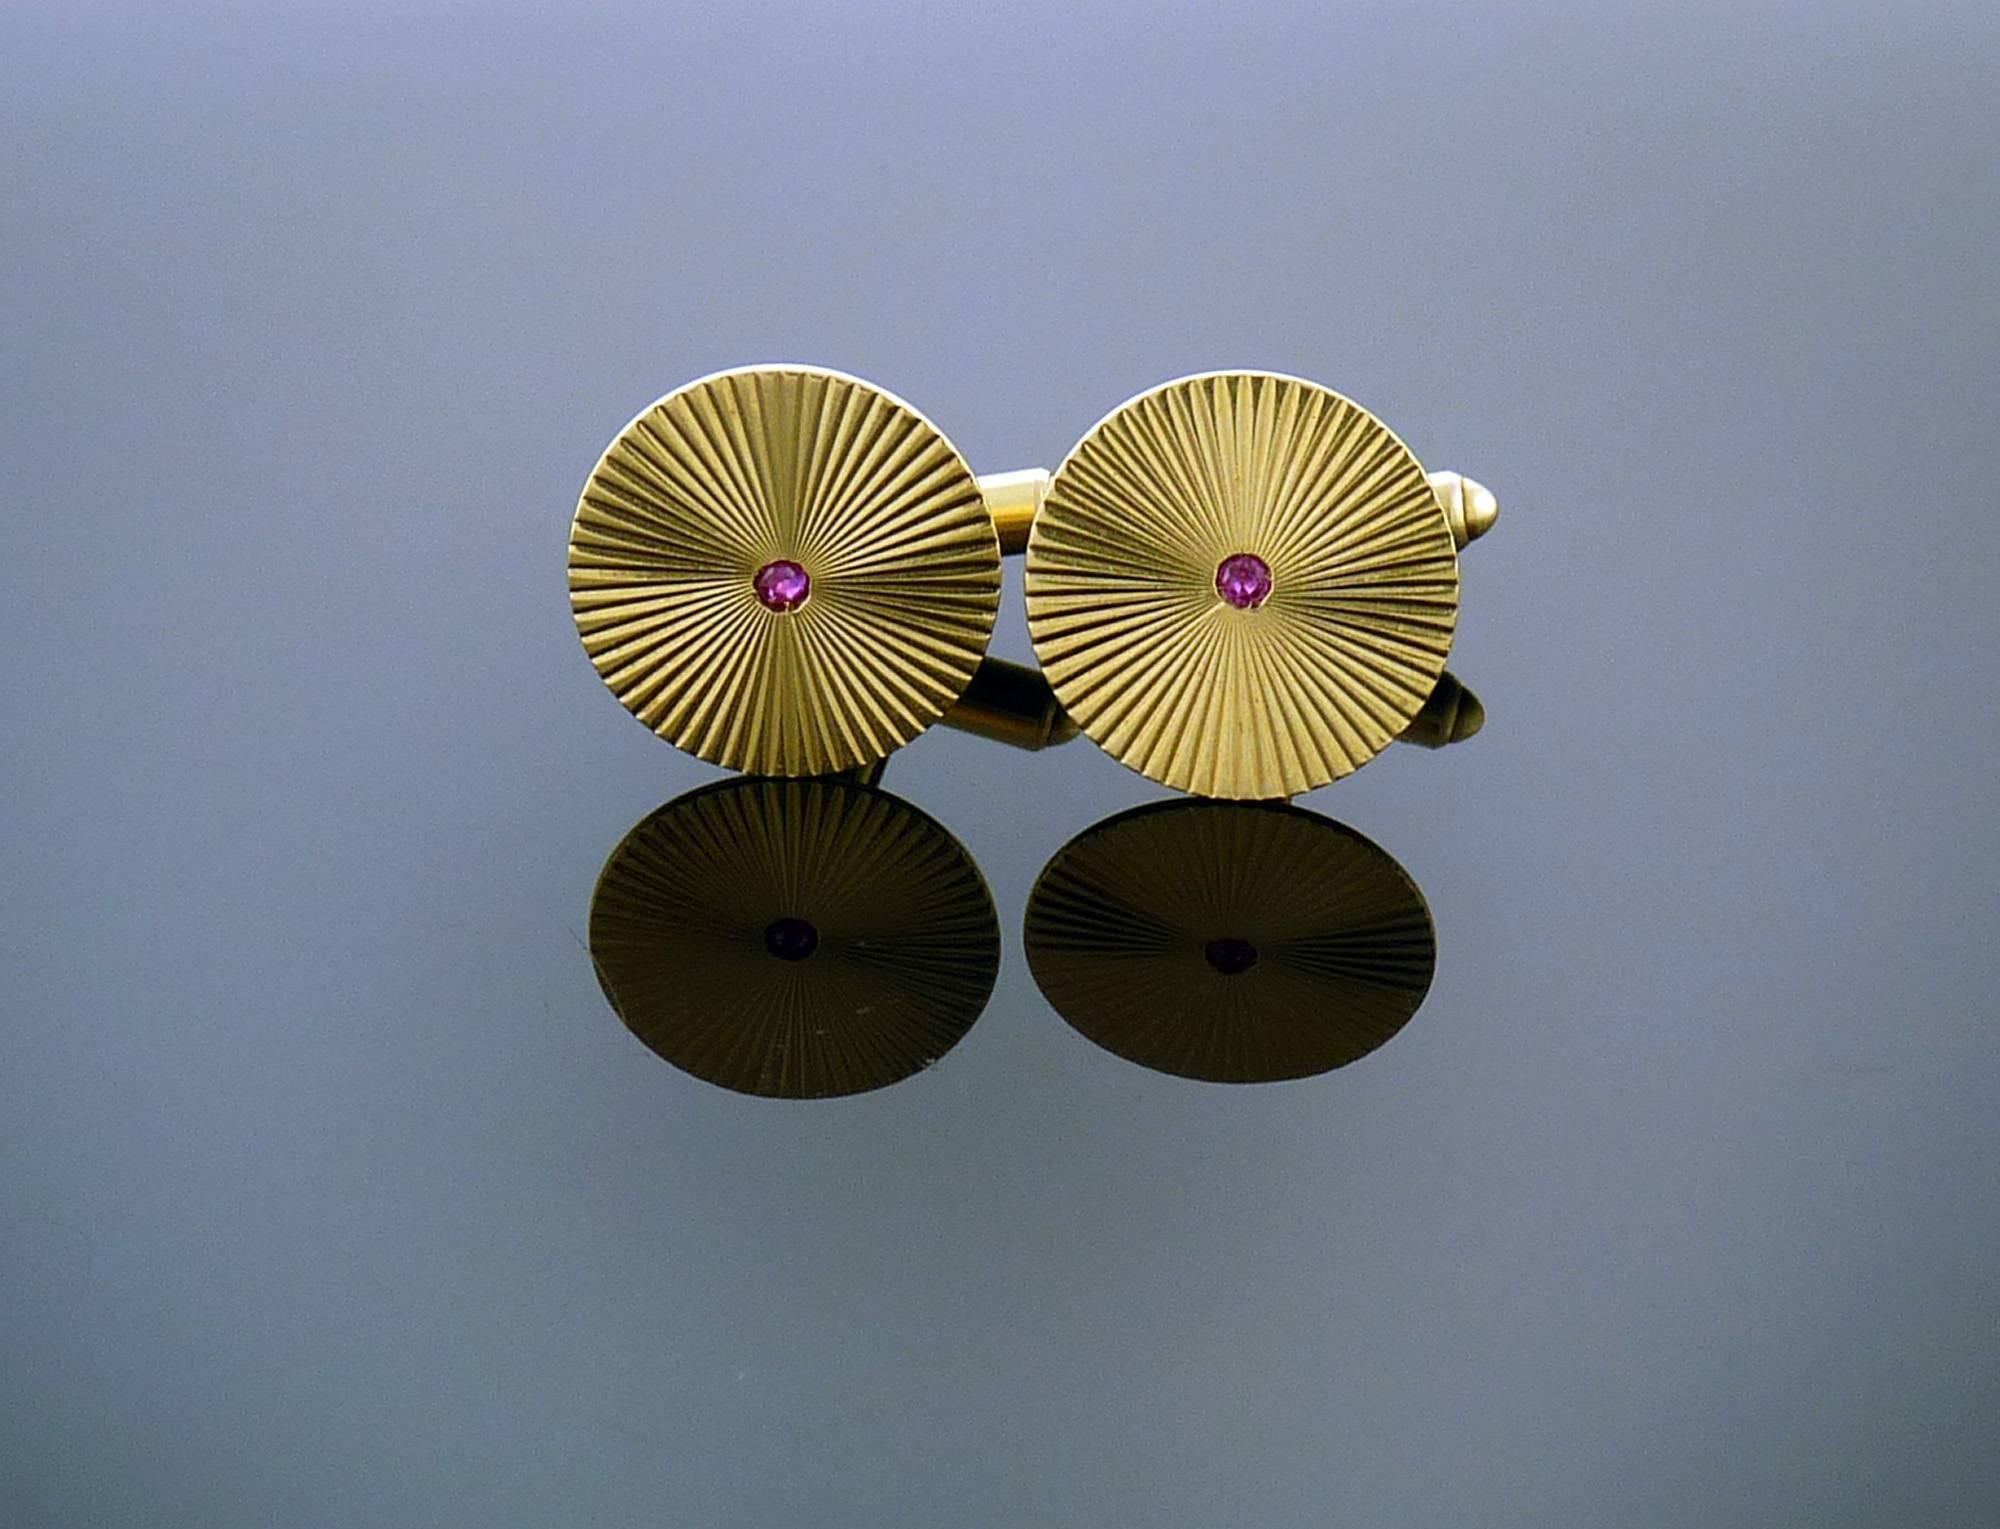 Ces étonnants boutons de manchette centrés en rubis sont montés en or jaune 14 carats.

Une touche parfaite pour toute tenue !